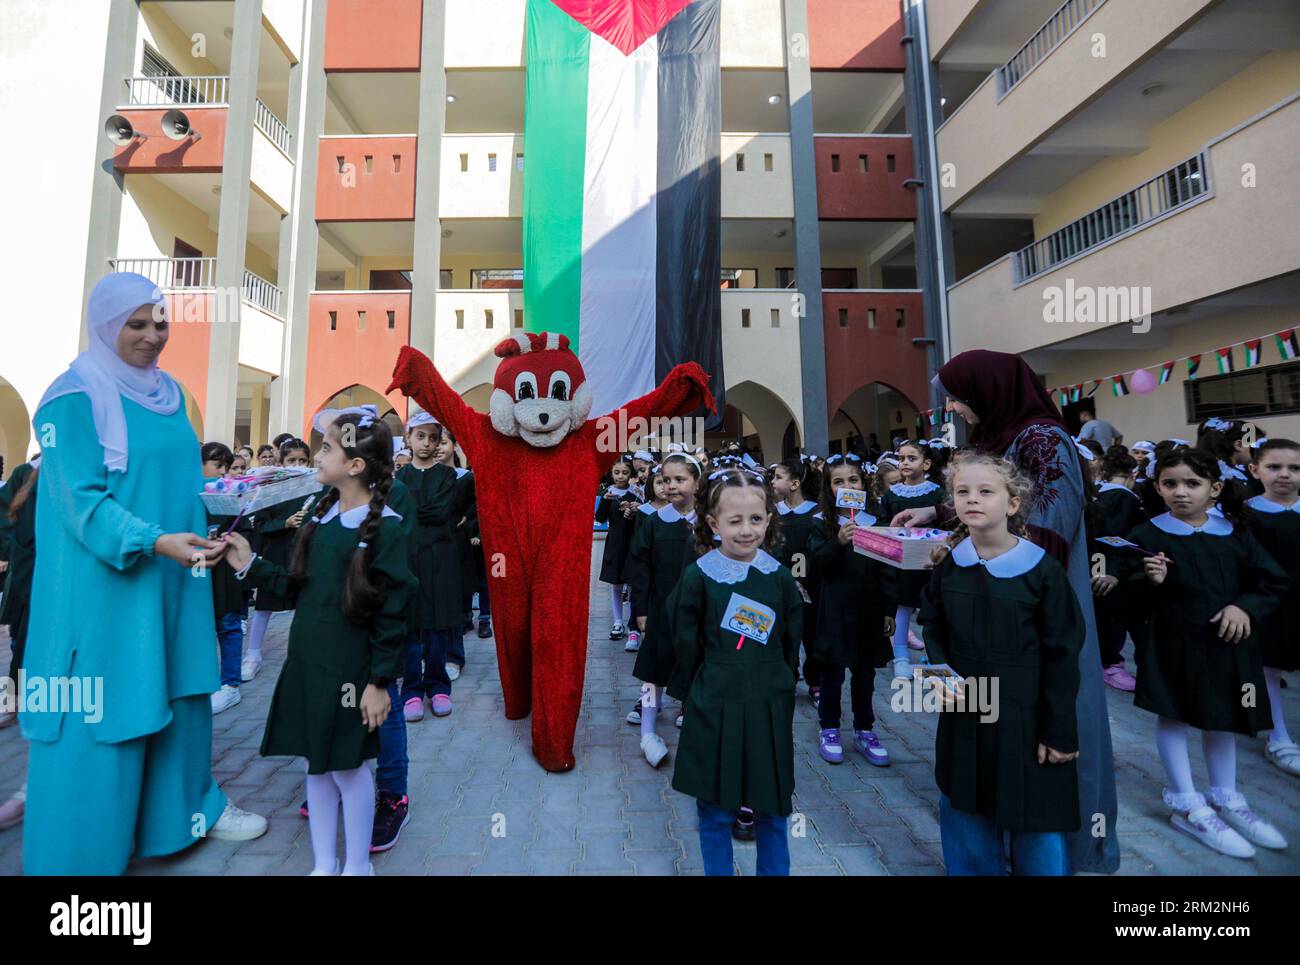 Gli studenti palestinesi prendono parte a uno spettacolo di clown durante le prove mattutine per il primo giorno a scuola del nuovo anno all'interno della loro scuola dell'Agenzia delle Nazioni Unite per il soccorso e l'occupazione (UNRWA) nella città di Gaza. Foto Stock